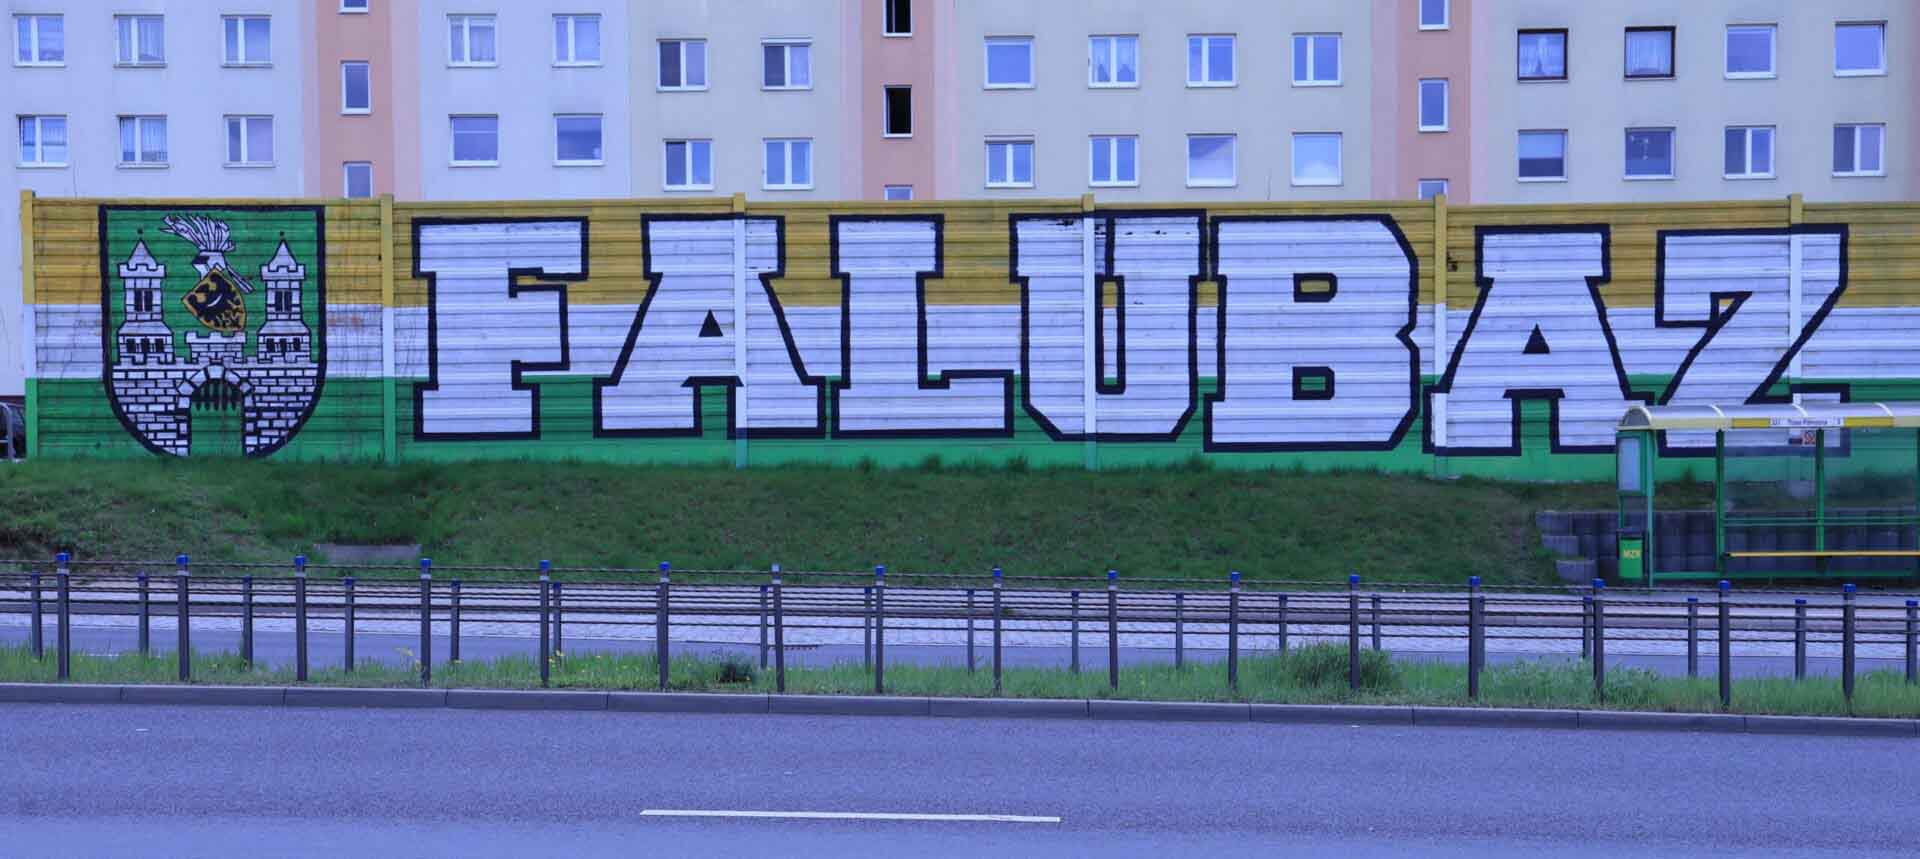 Duży napis "Falubaz" na ekranie dźwiękochłonnym